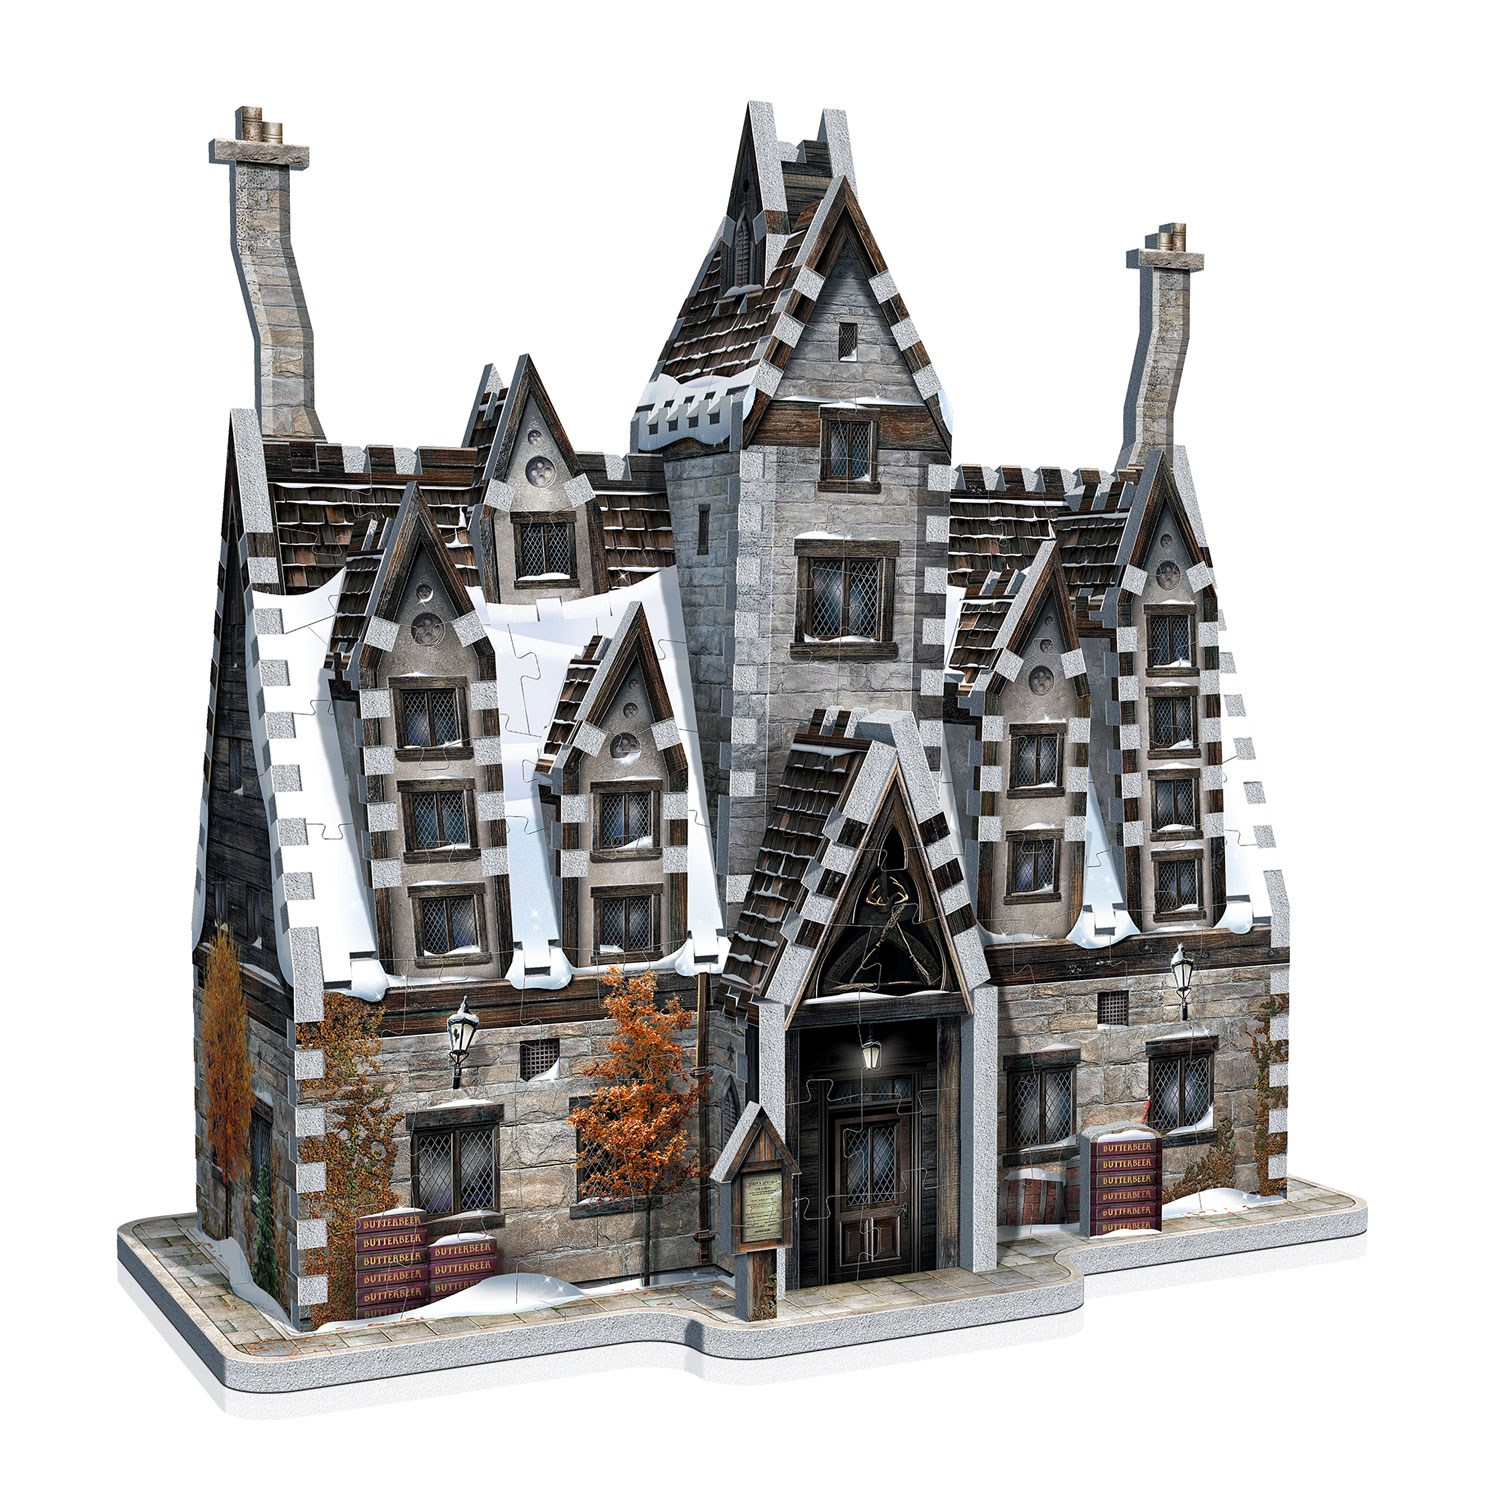 Banque de Gringotts - Puzzle 3D Wrebbit - Harry Potter